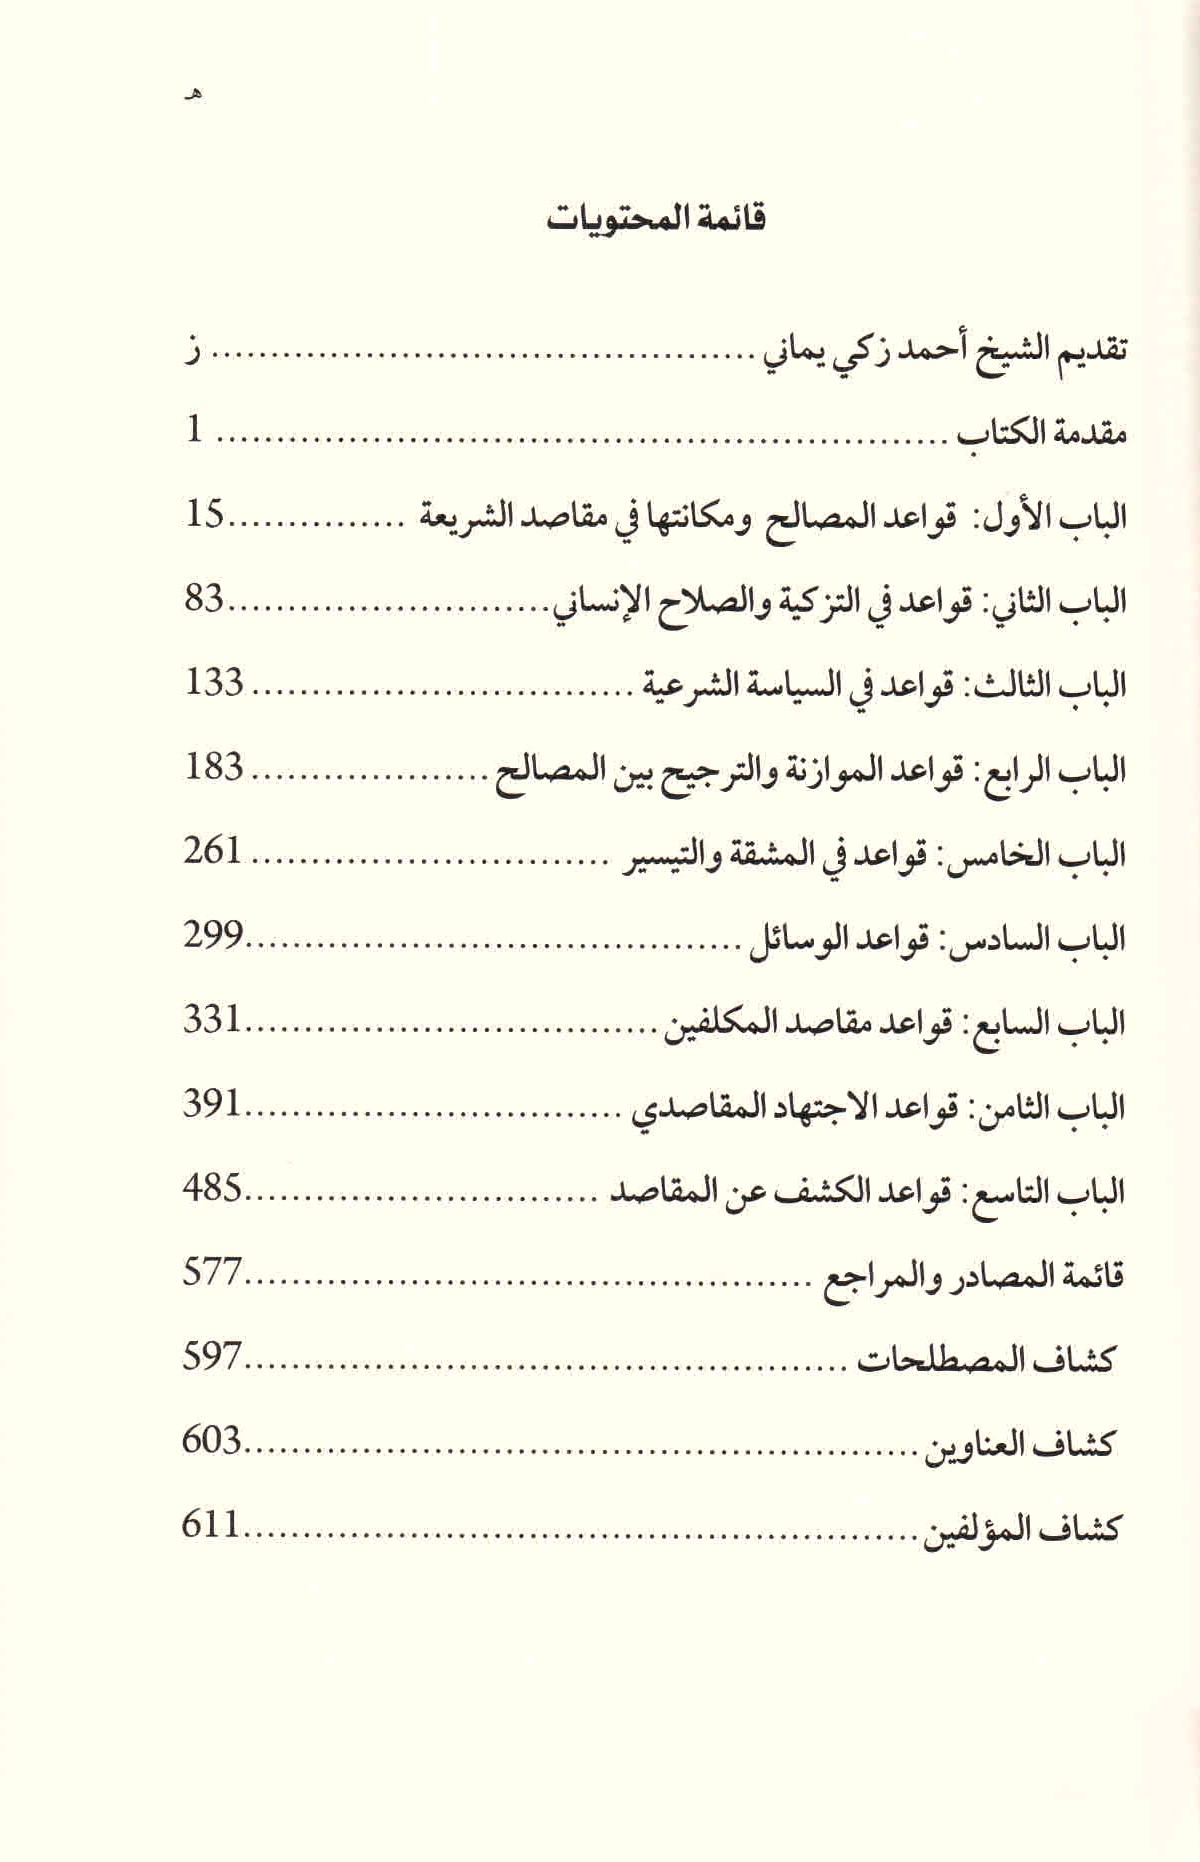 قائمة محتويات كتاب قواعد المقاصد للدكتور أحمد الريسوني.